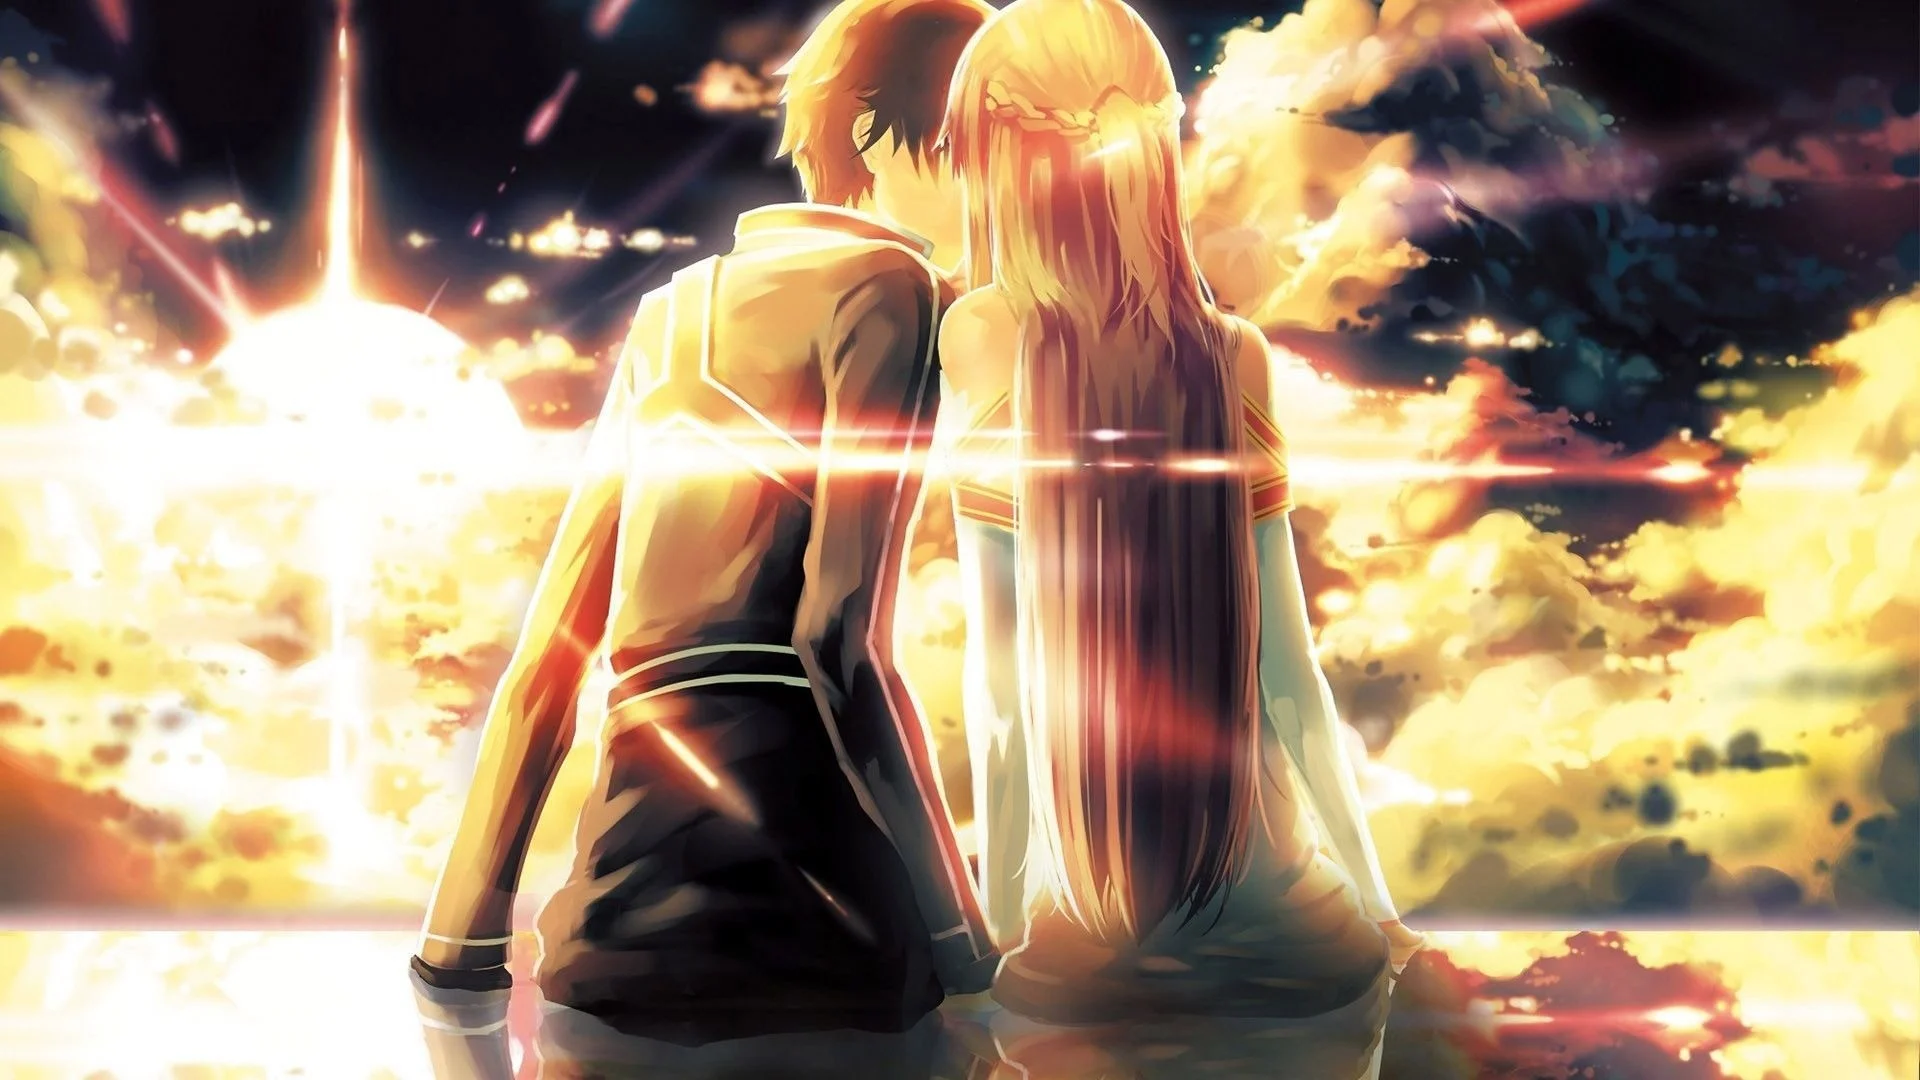 Hình nền anime cặp đôi hôn nhau làm cho trái tim bạn sảng khoái. Những chi tiết tinh tế của bức tranh làm tình yêu trở nên đẹp đẽ và ngọt ngào. Nét vẽ của họa sĩ rất sáng tạo, tạo nên một bầu không khí lãng mạn và huyền thoại.